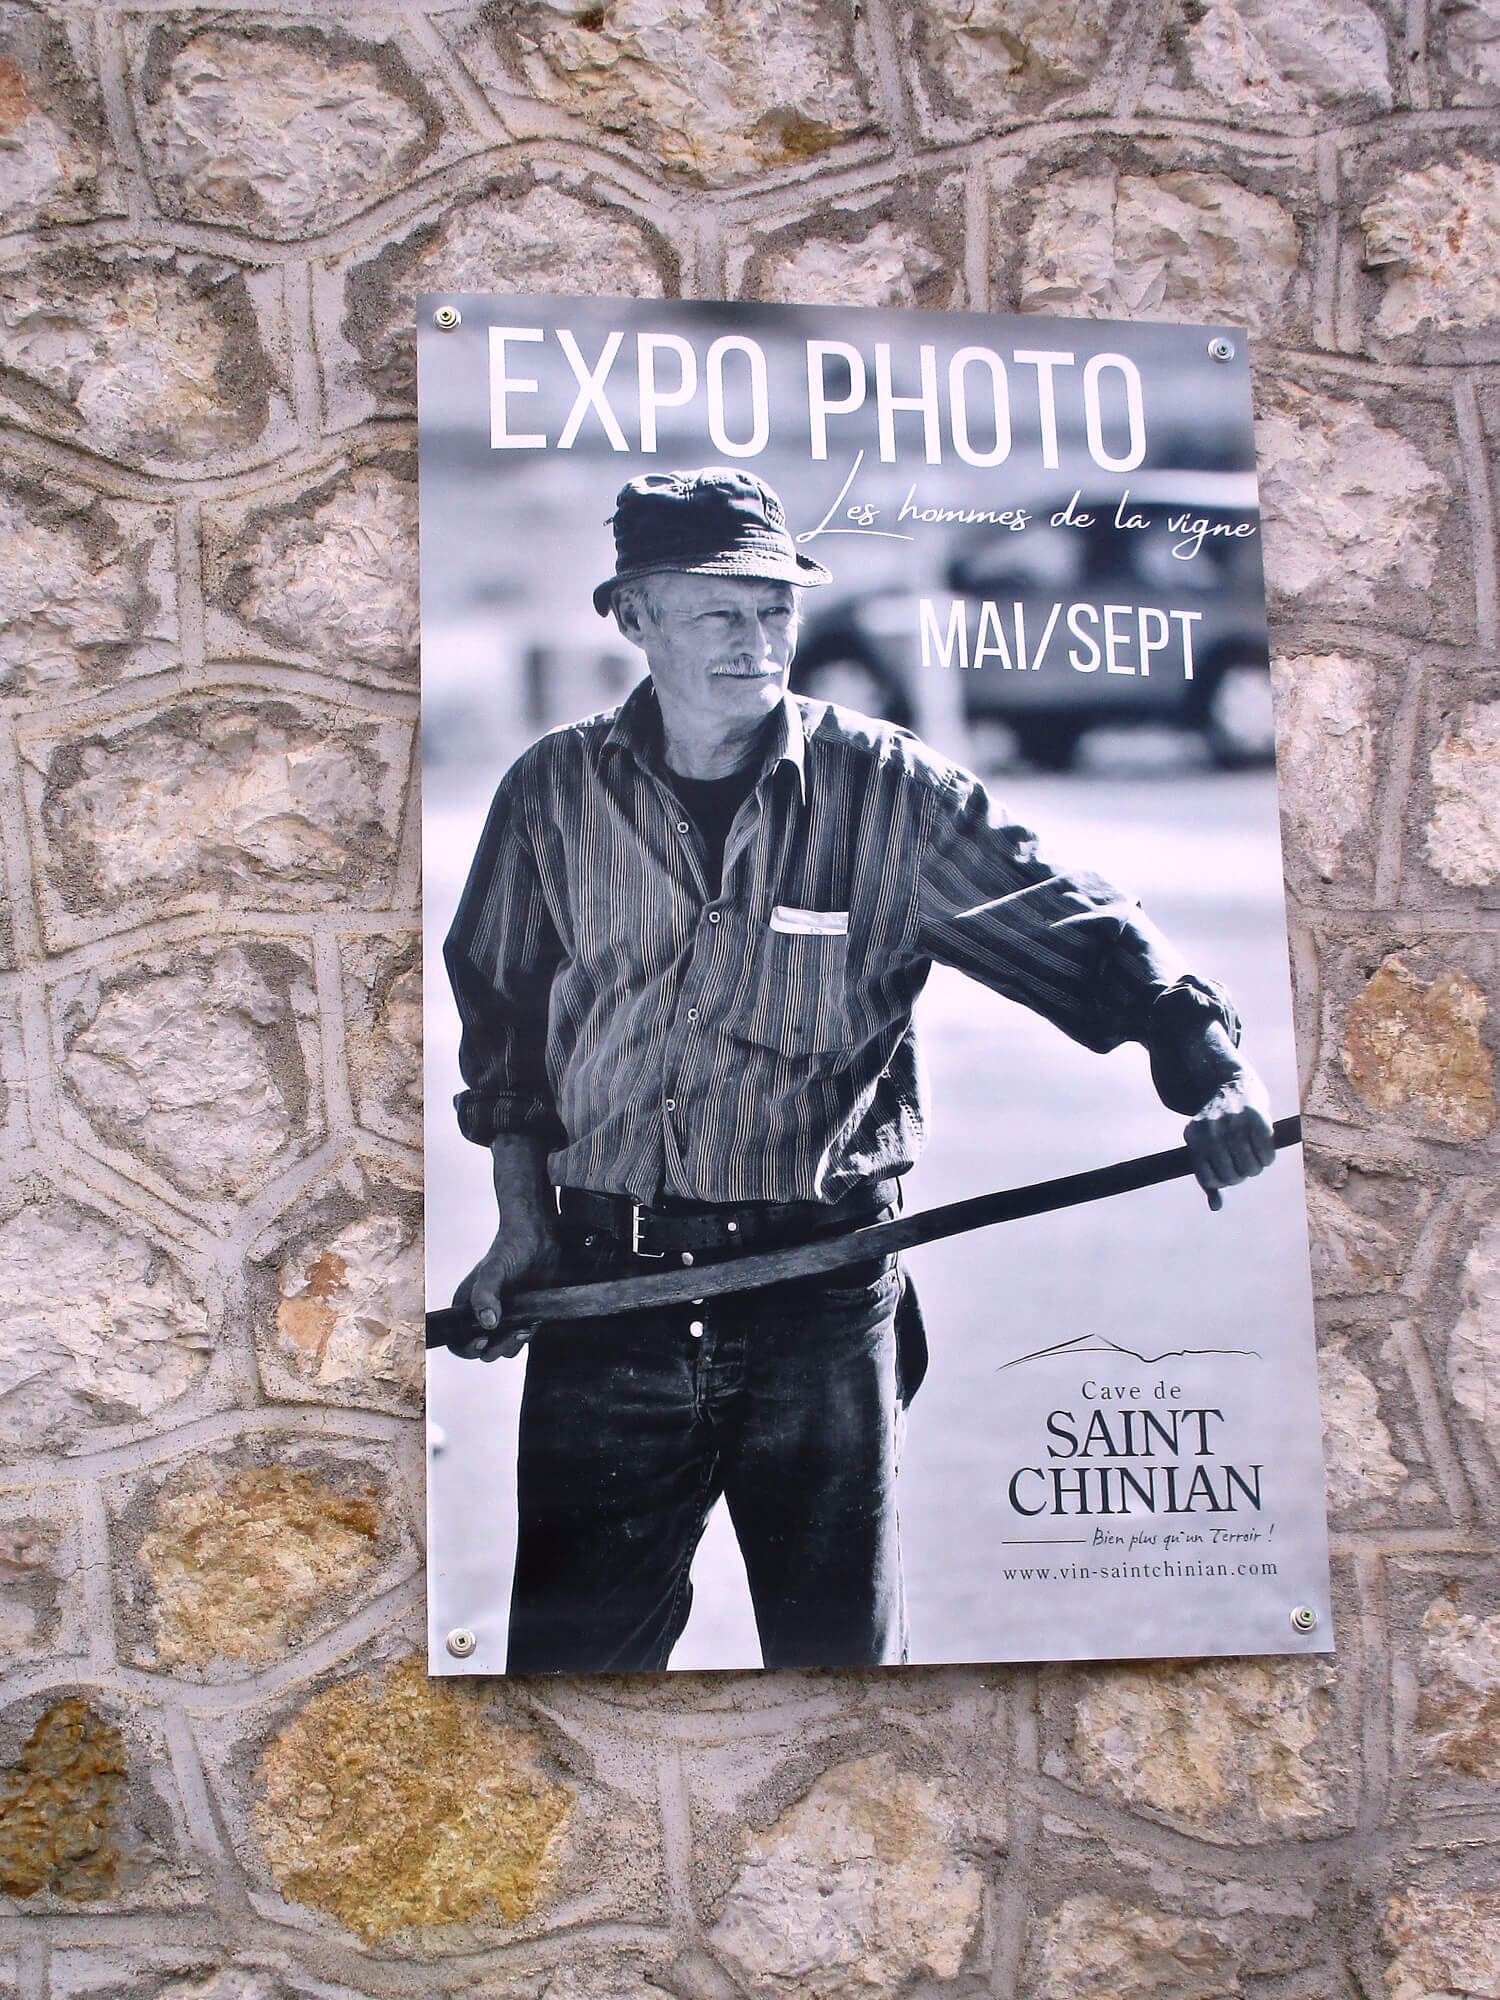 Exposición fotográfica en la bodega de Saint-Chinian